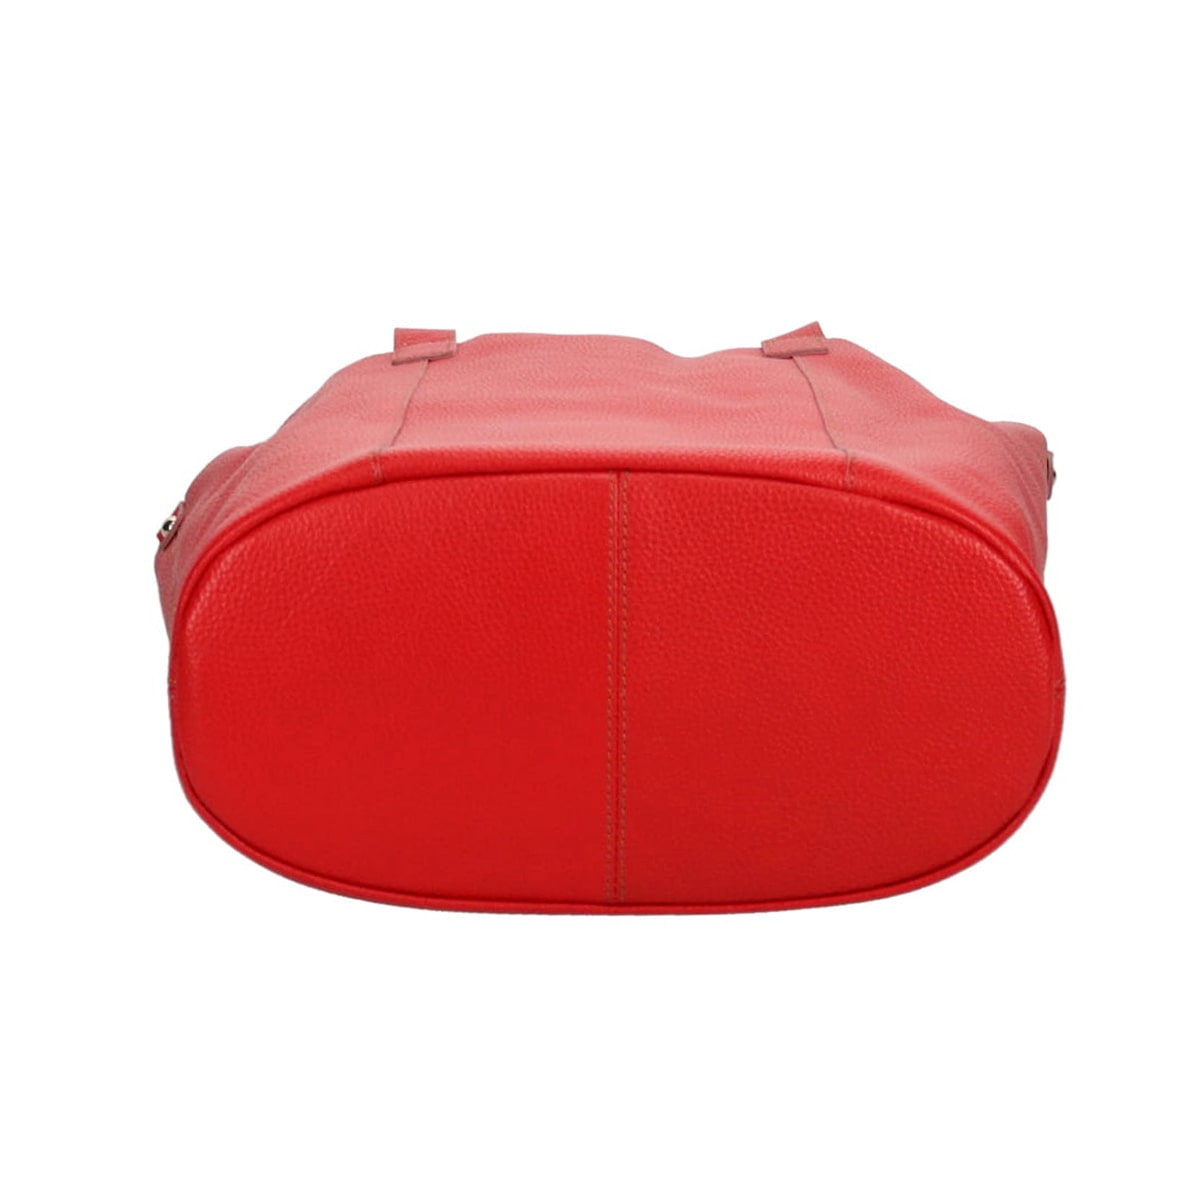 モデロ MODELLO 一枚革を使用した柔らかいトートバッグ DMLB102 RED FREE